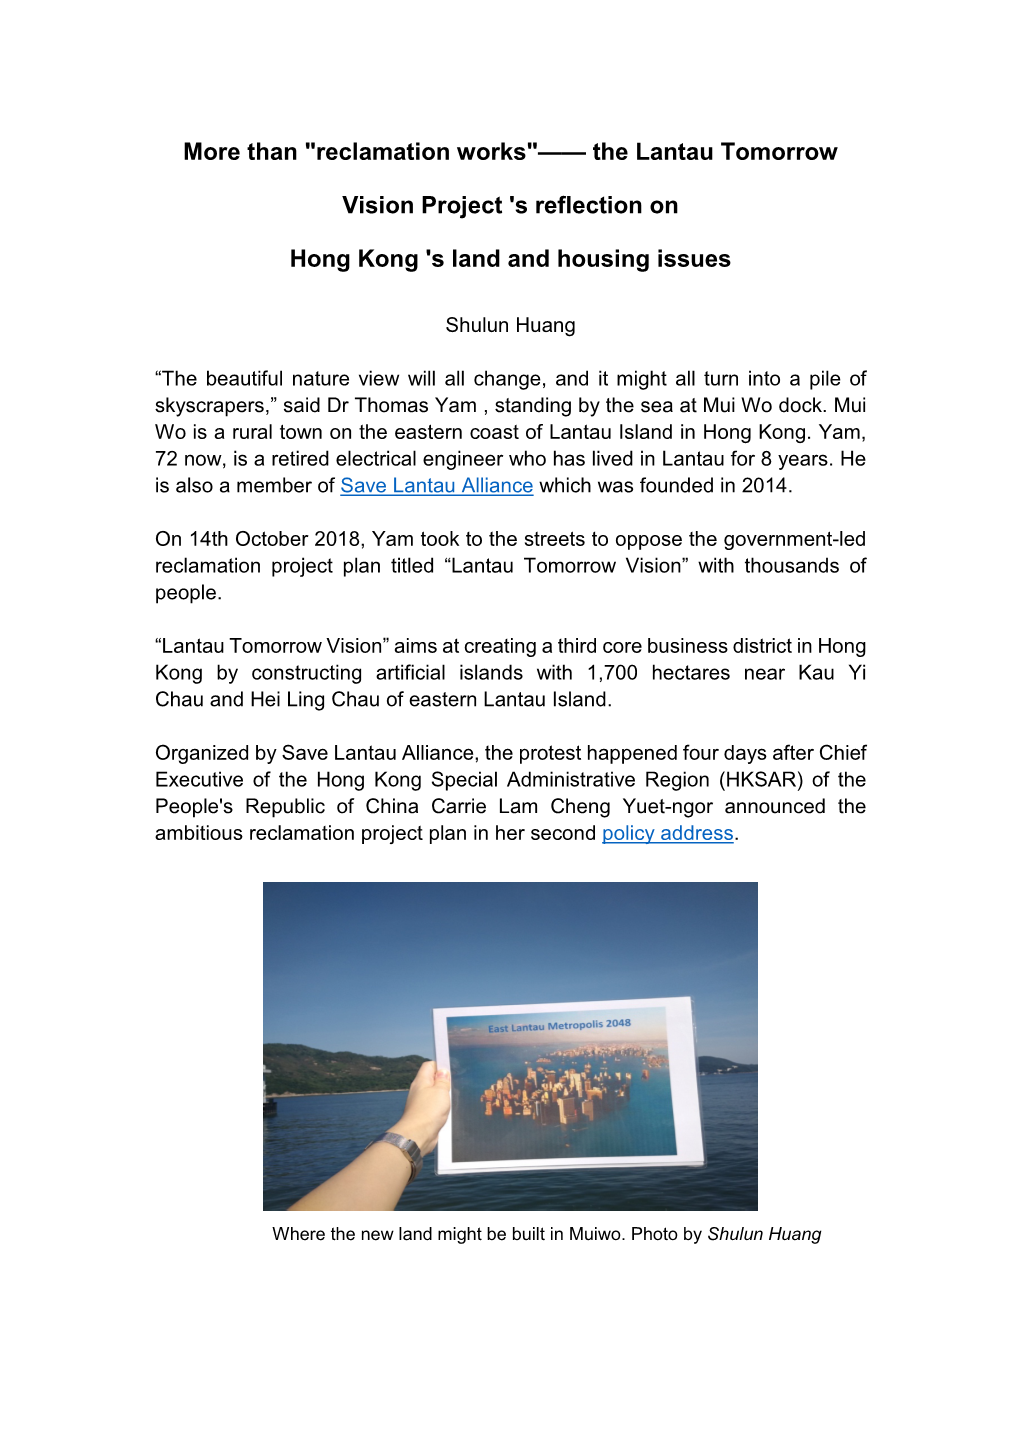 The Lantau Tomorrow Vision Project 'S Reflection on Hong Kong 'S Land